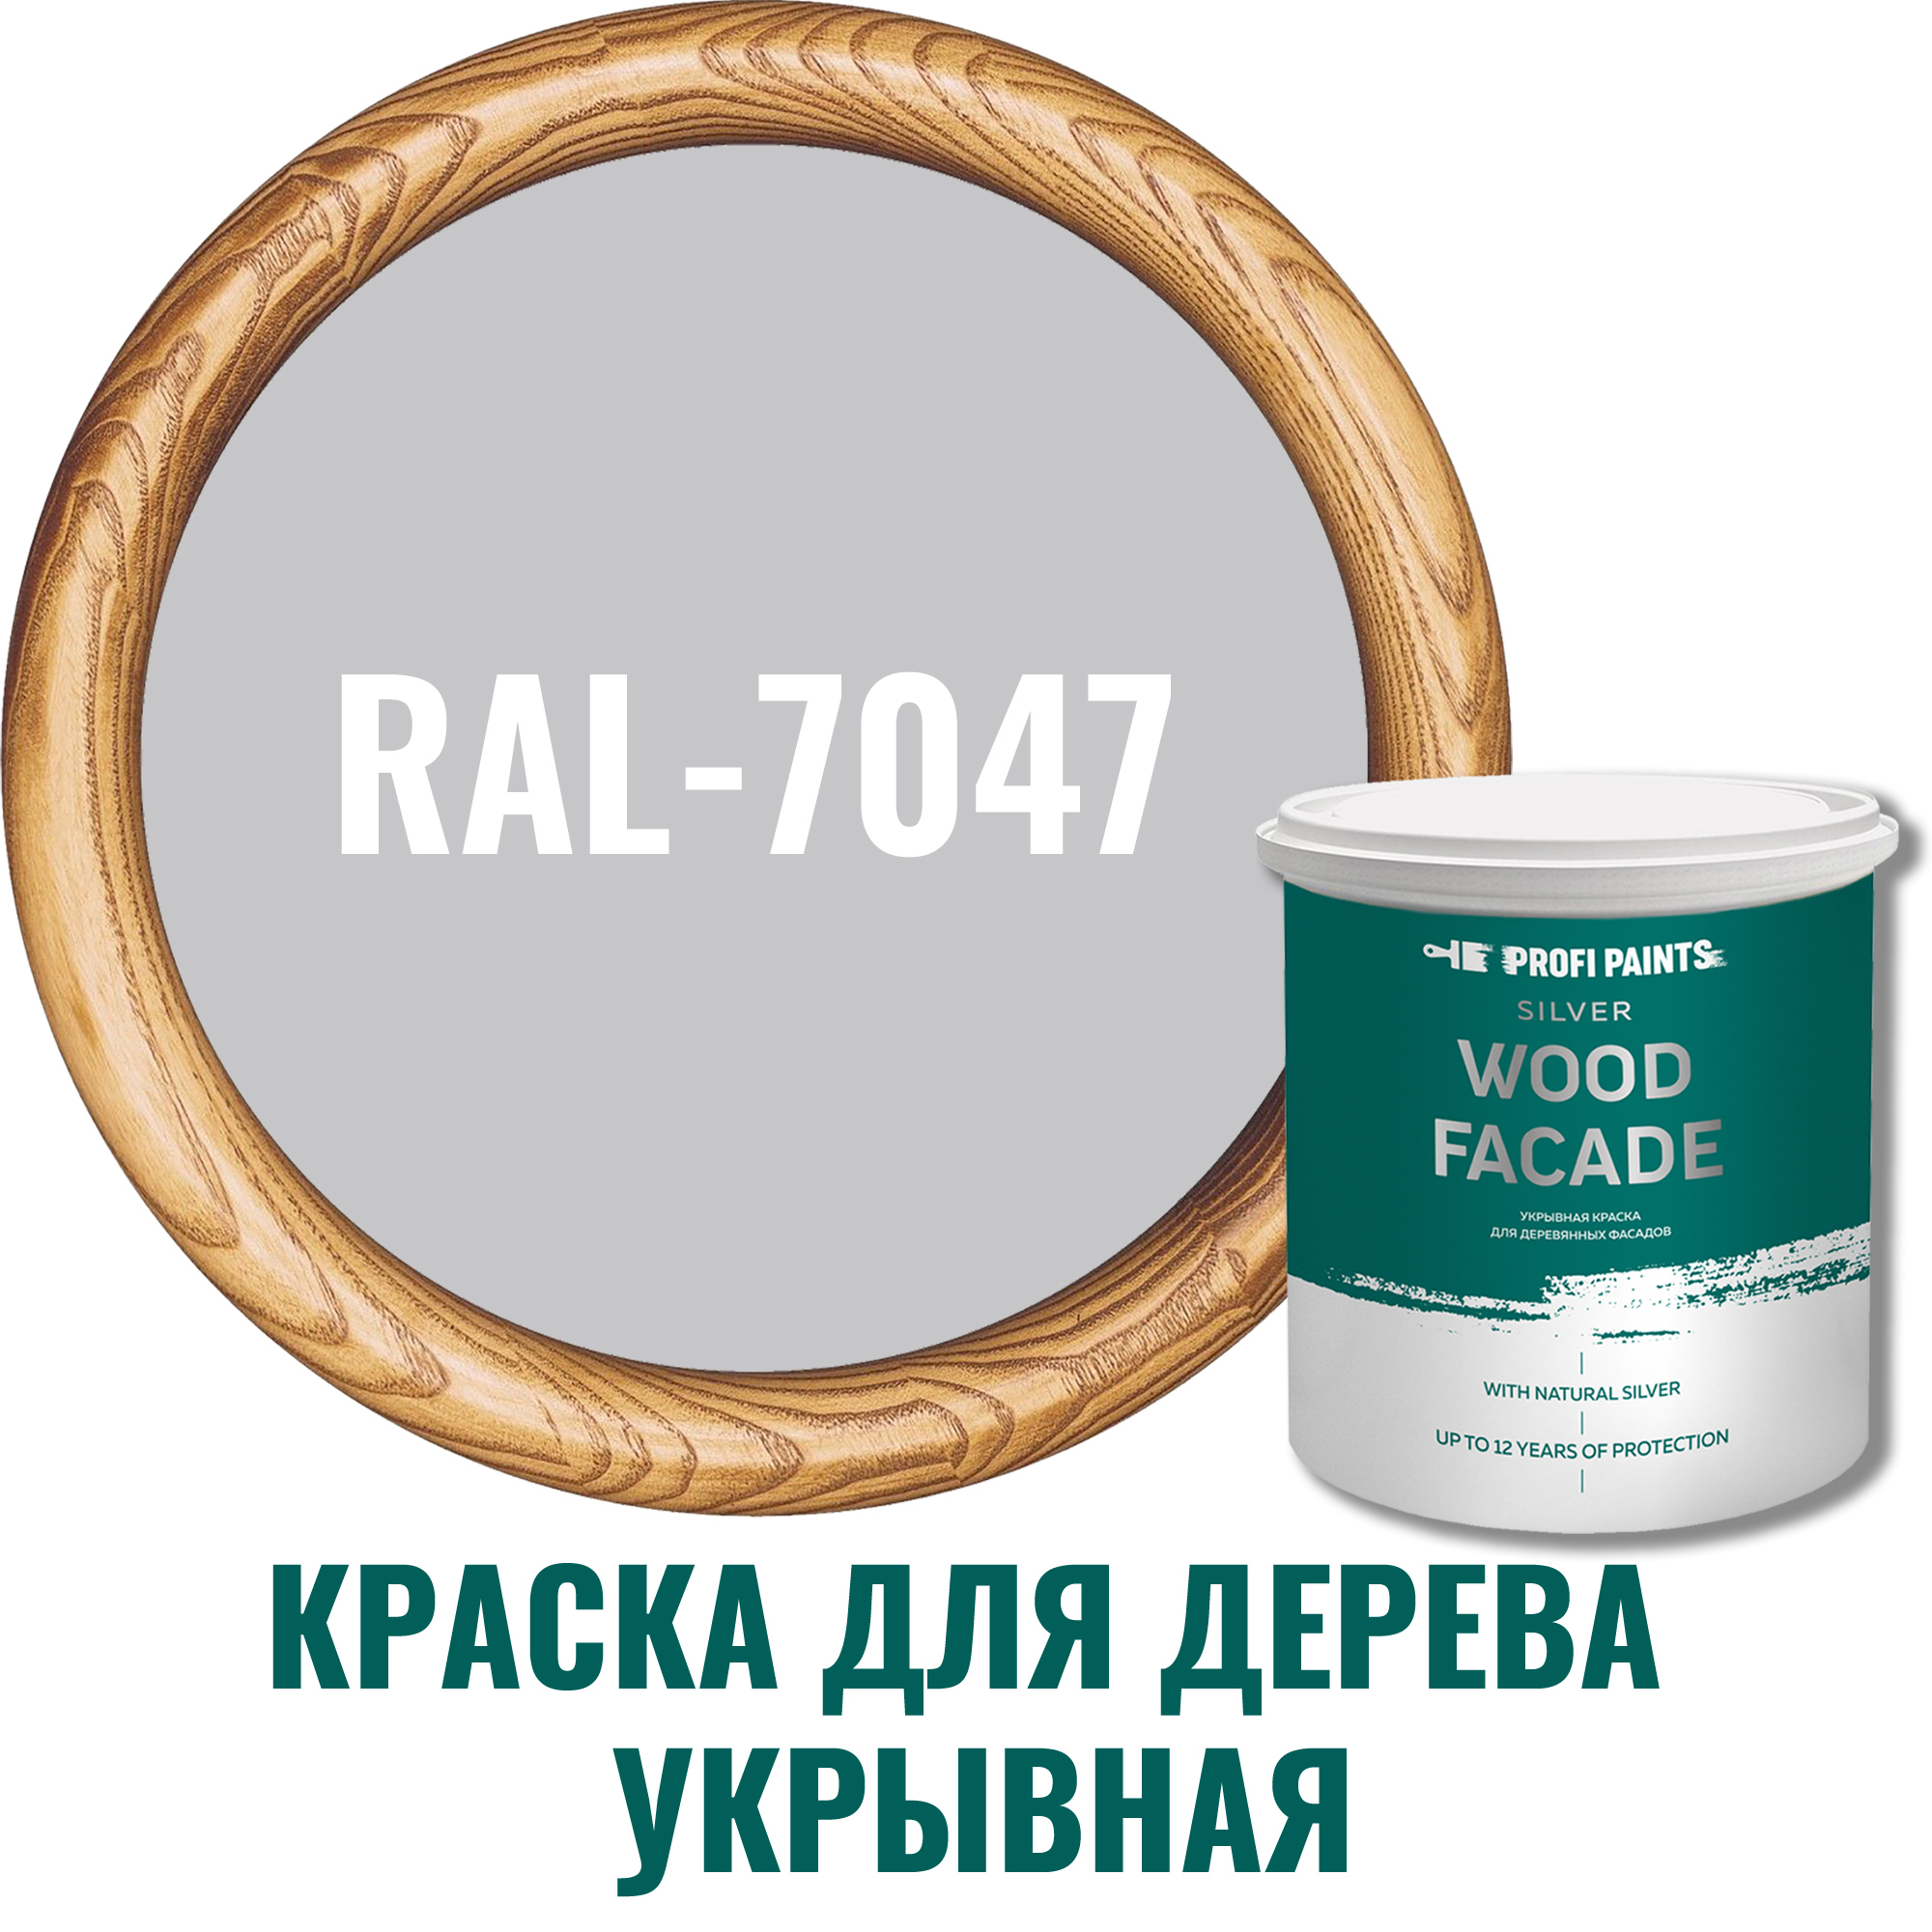 91007152 Краска для дерева Silver Wood Fasade цвет RAL-7047 телегрей 4 2.7 л STLM-0437196 PROFIPAINTS